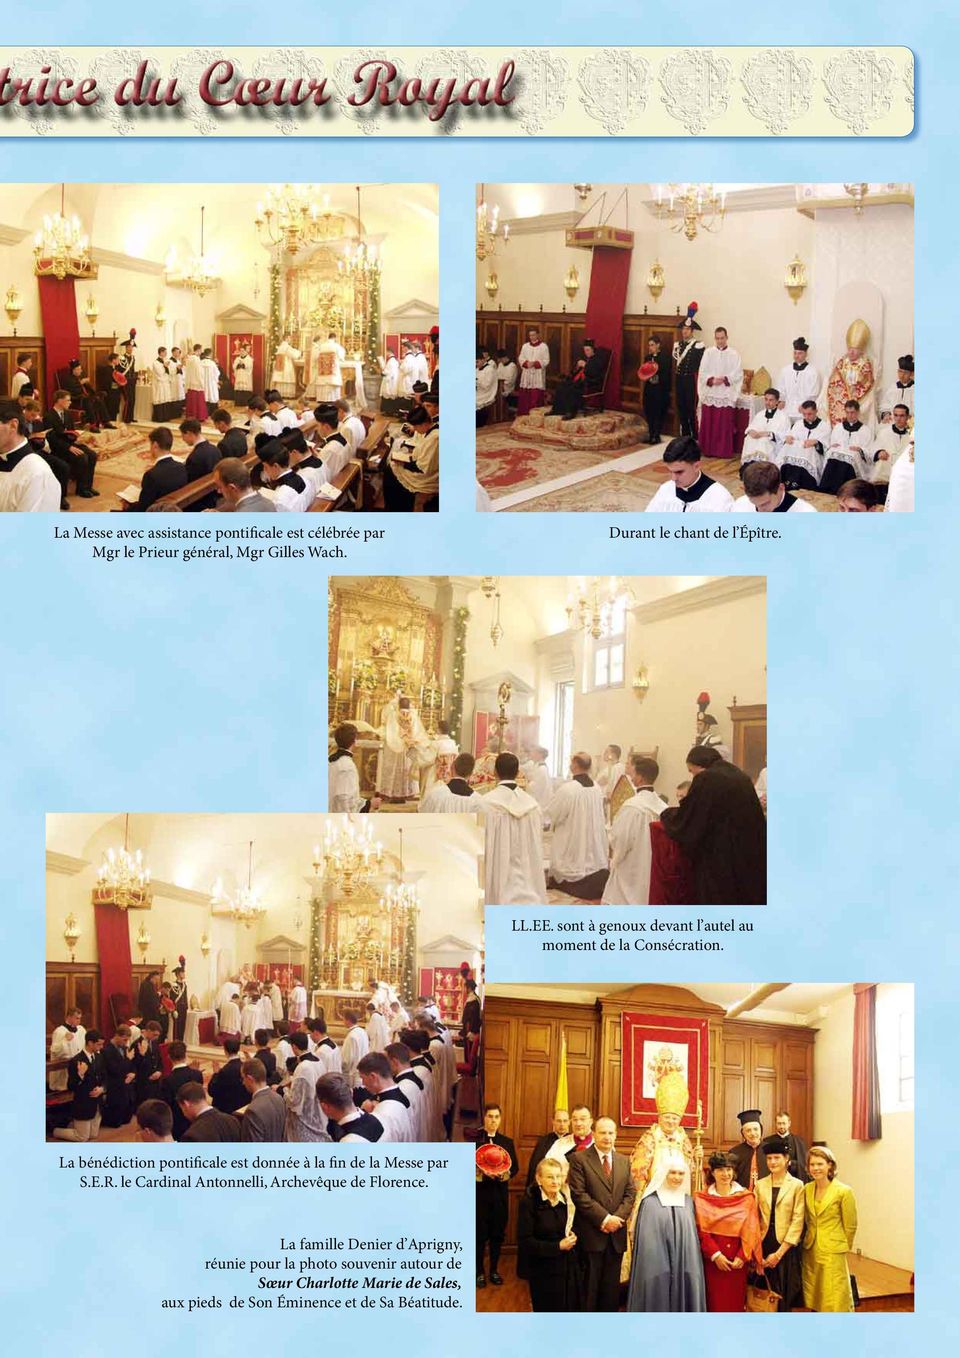 La bénédiction pontificale est donnée à la fin de la Messe par S.E.R.